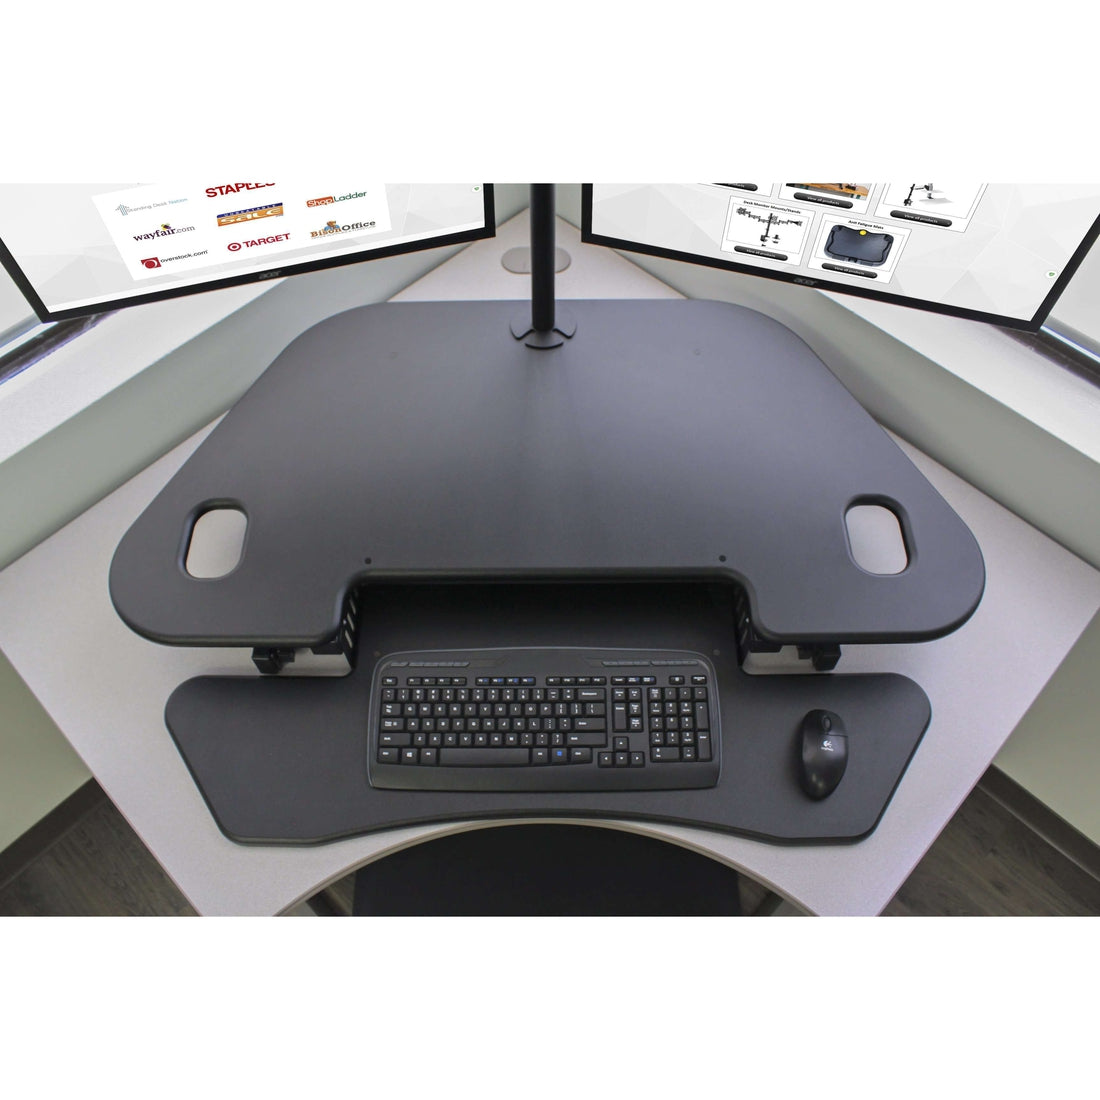 Rocelco Standing Desk Converter 46 Inch Deluxe Adjustable Riser, Black 